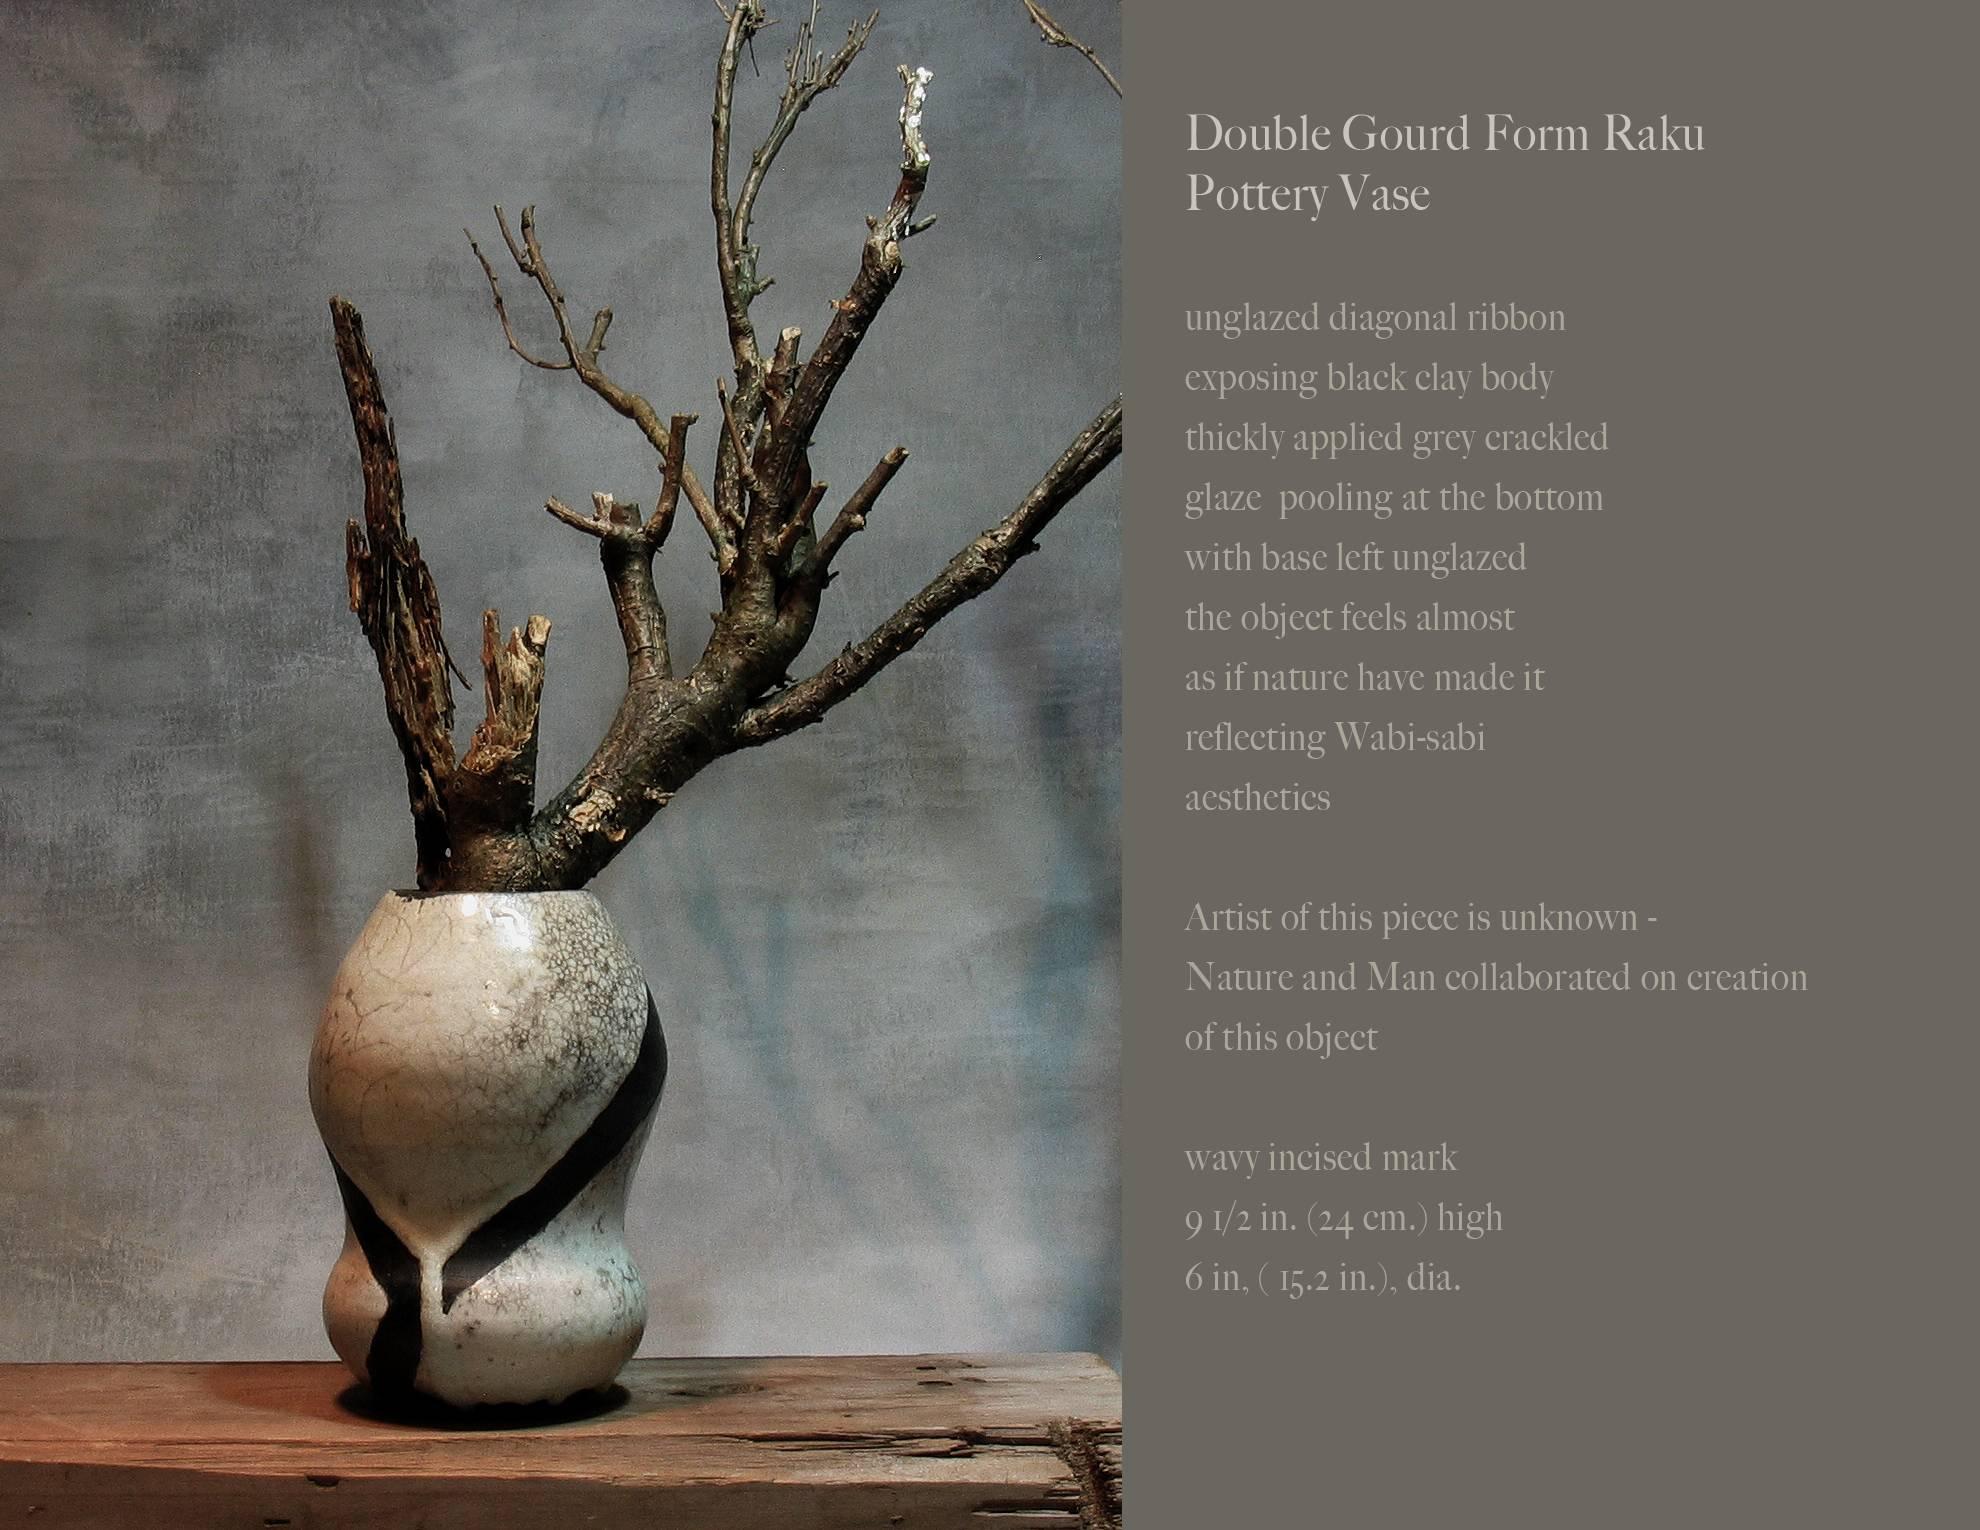 Vase artistique en poterie Raku en forme de double gourde, ruban diagonal non émaillé exposant le corps d'argile noire ; glaçure grise craquelée appliquée en couche épaisse s'accumulant au fond ; base non émaillée ; l'objet donne l'impression